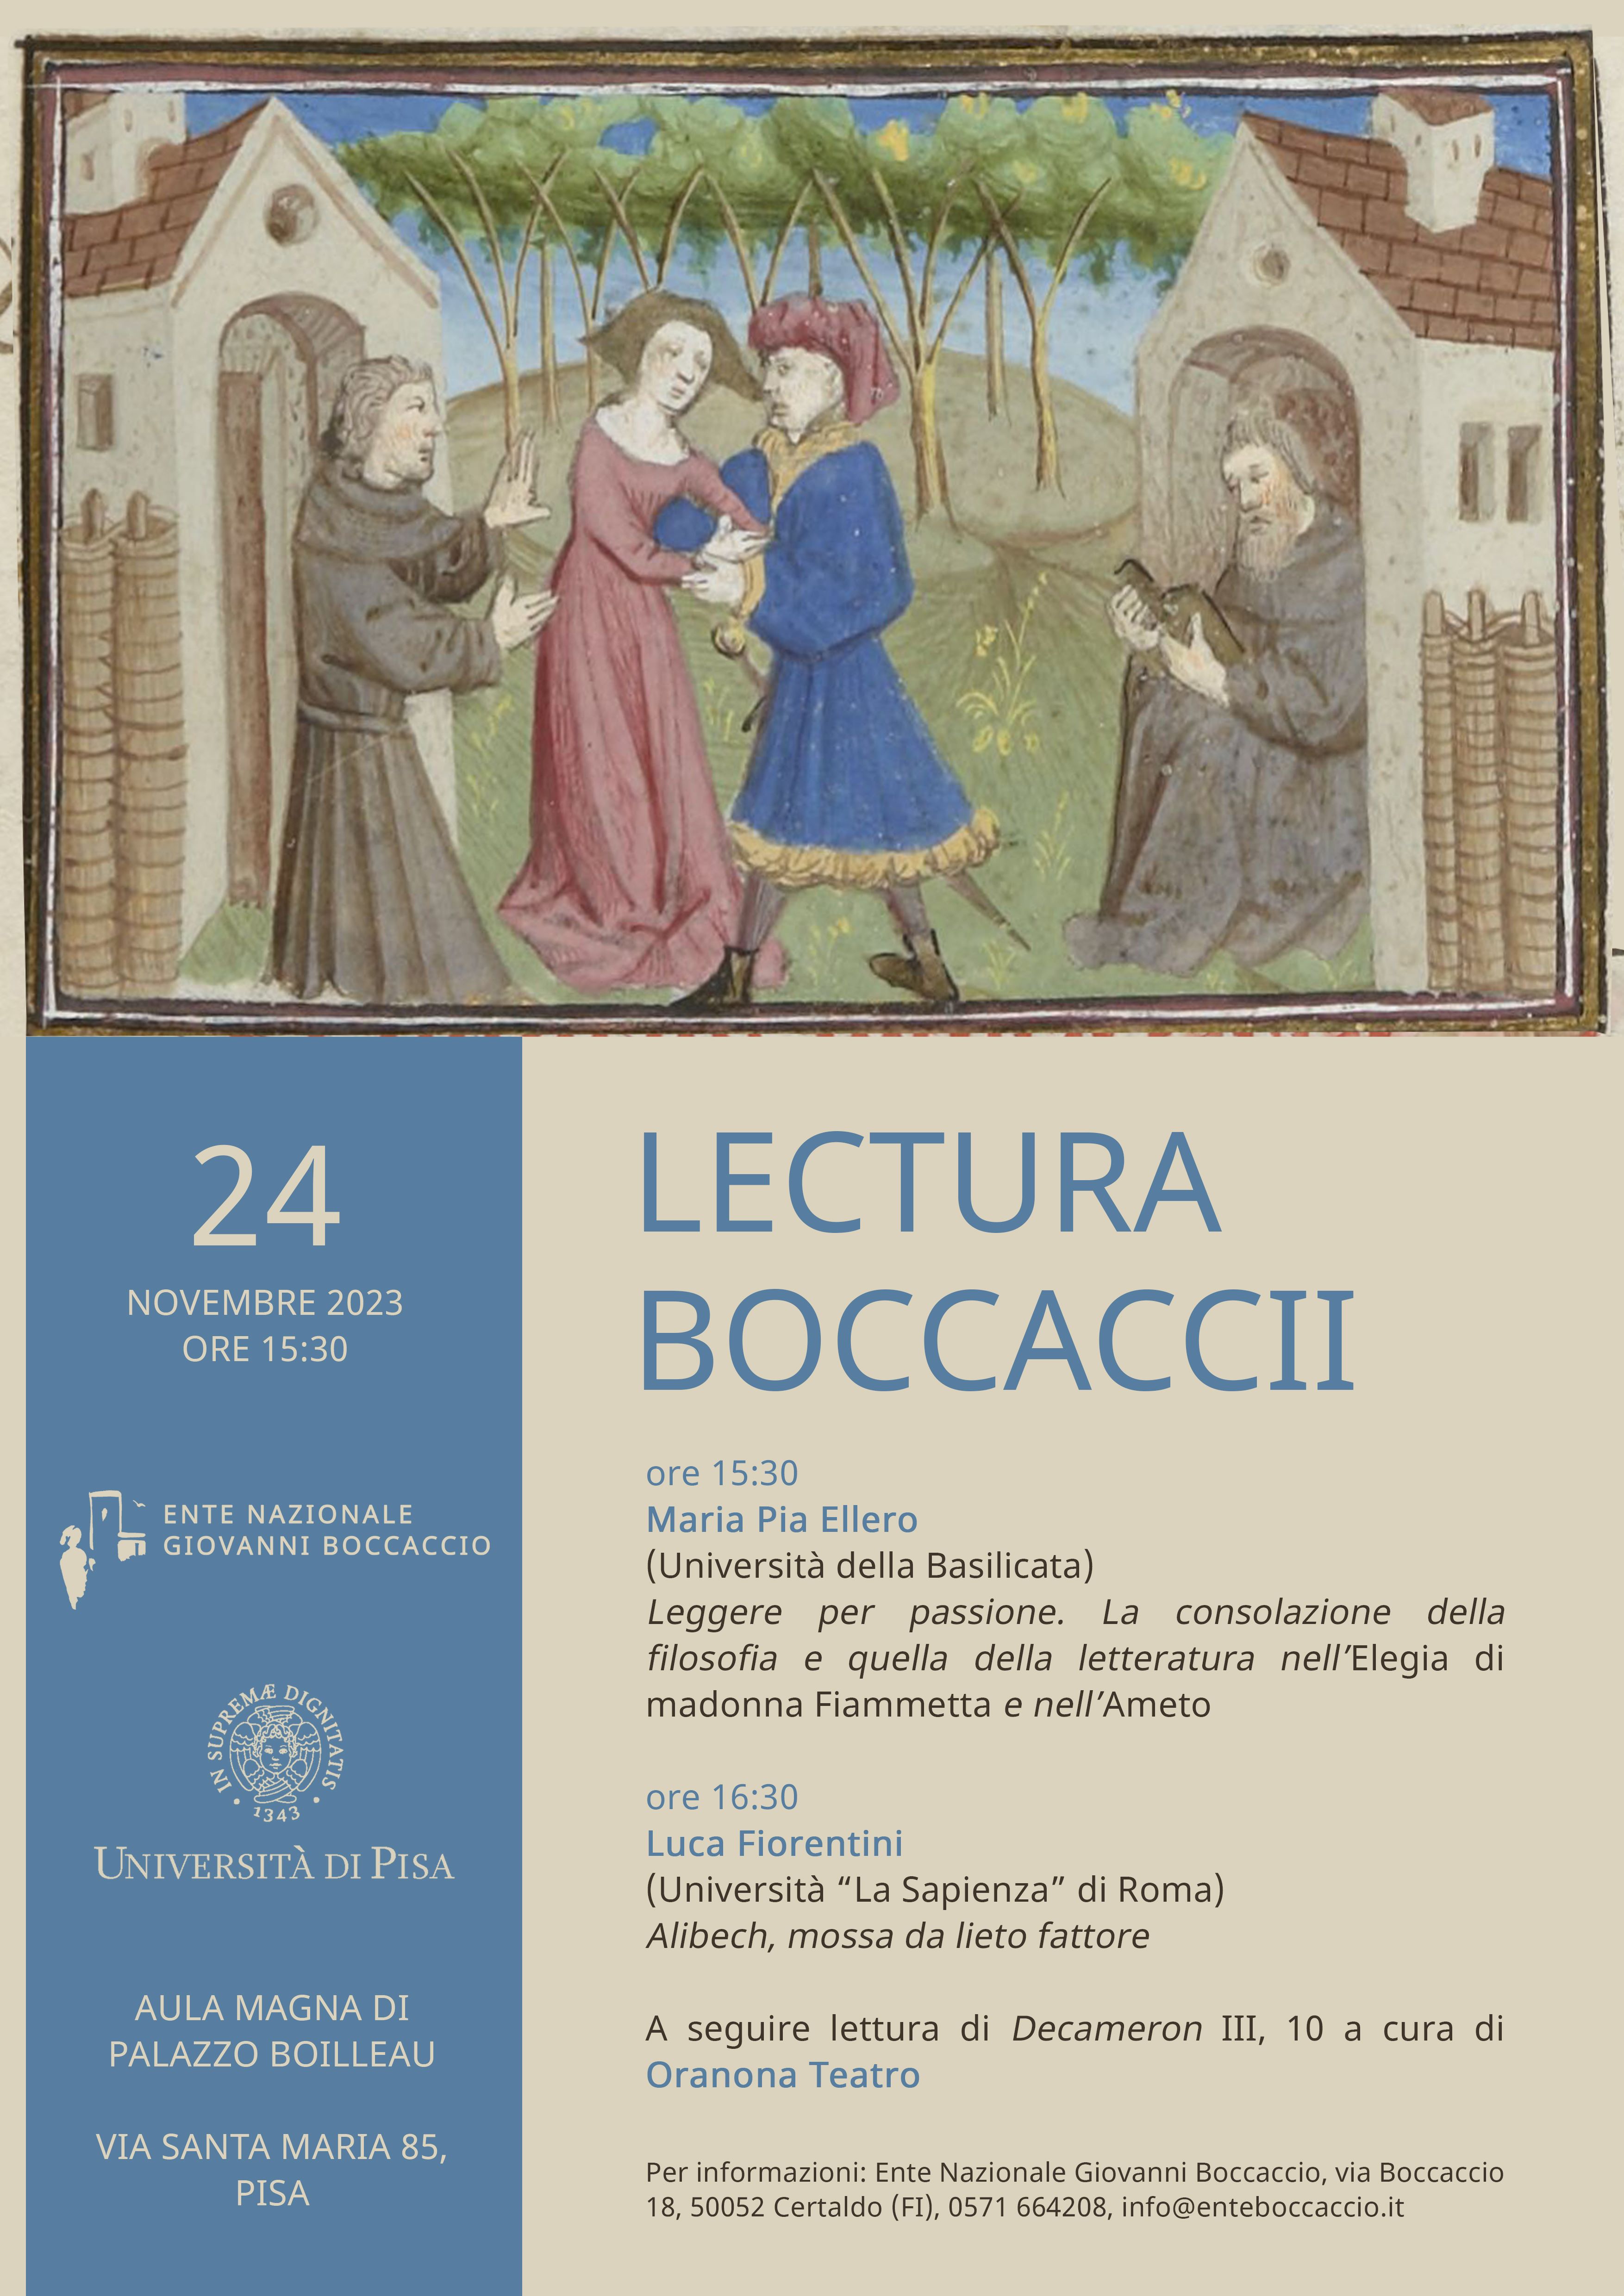 Lectura Boccaccii 24 novembre 2023 Pisa